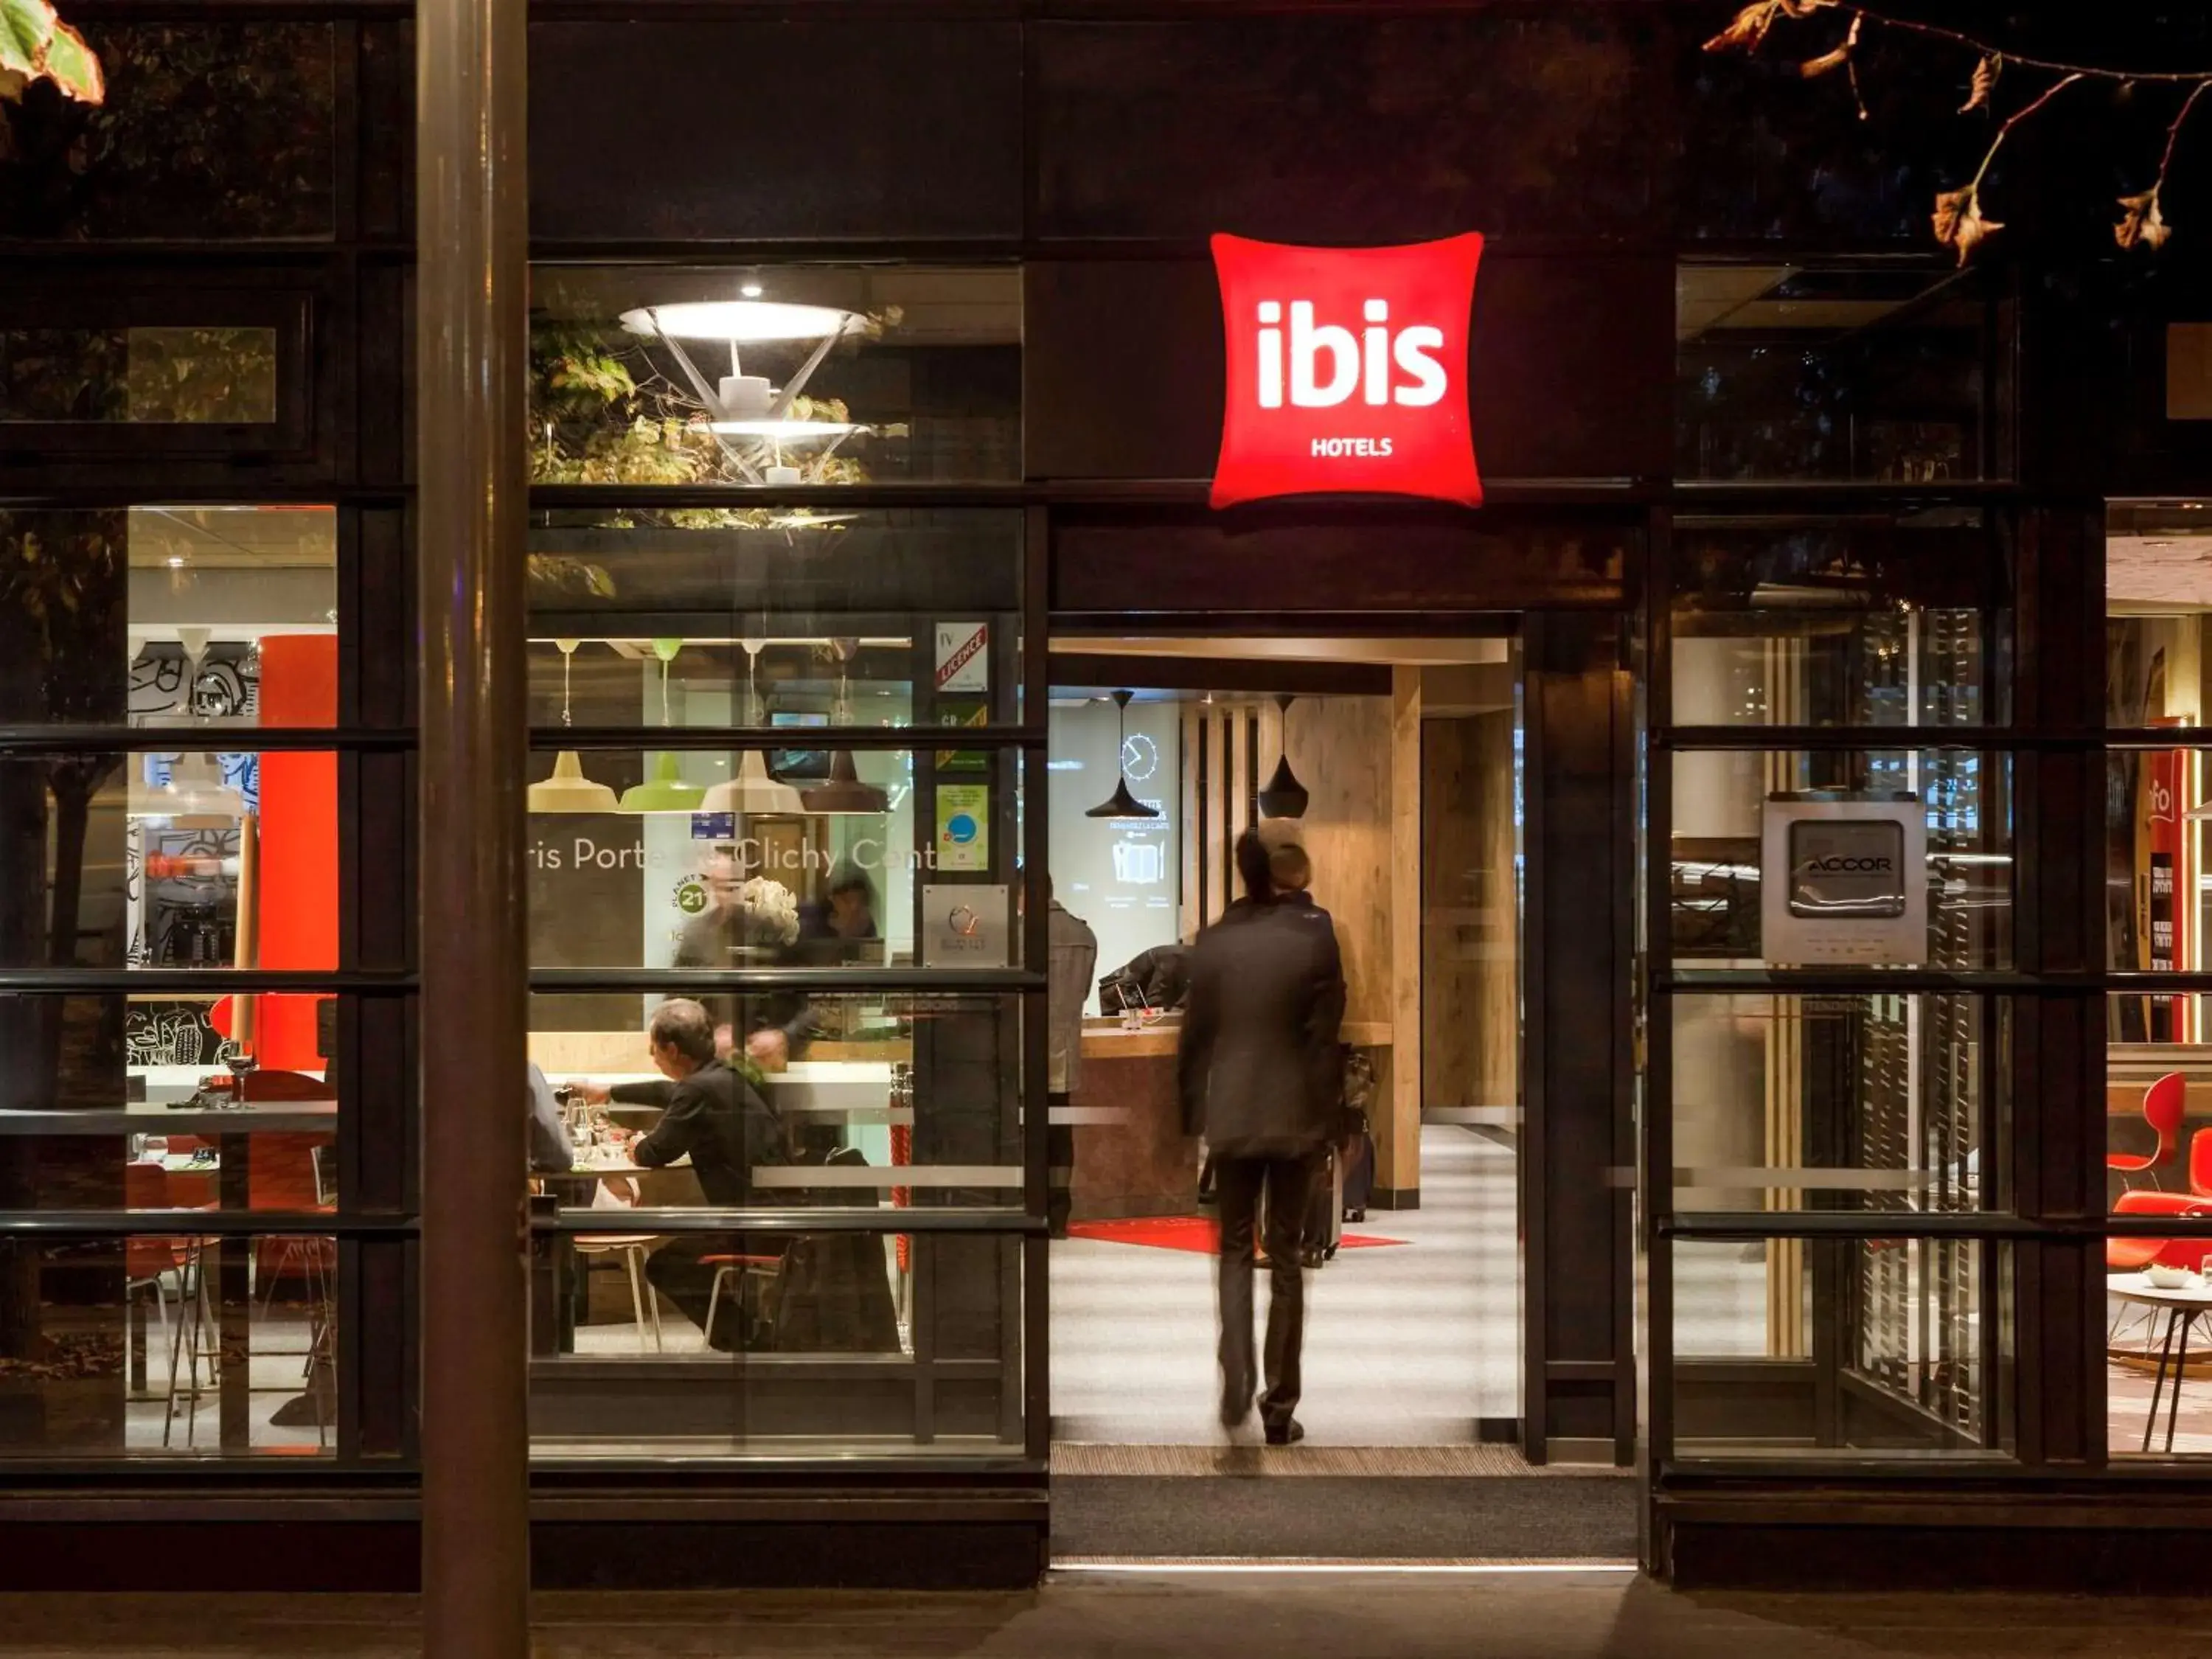 Restaurant/places to eat in ibis Paris Porte de Clichy Centre